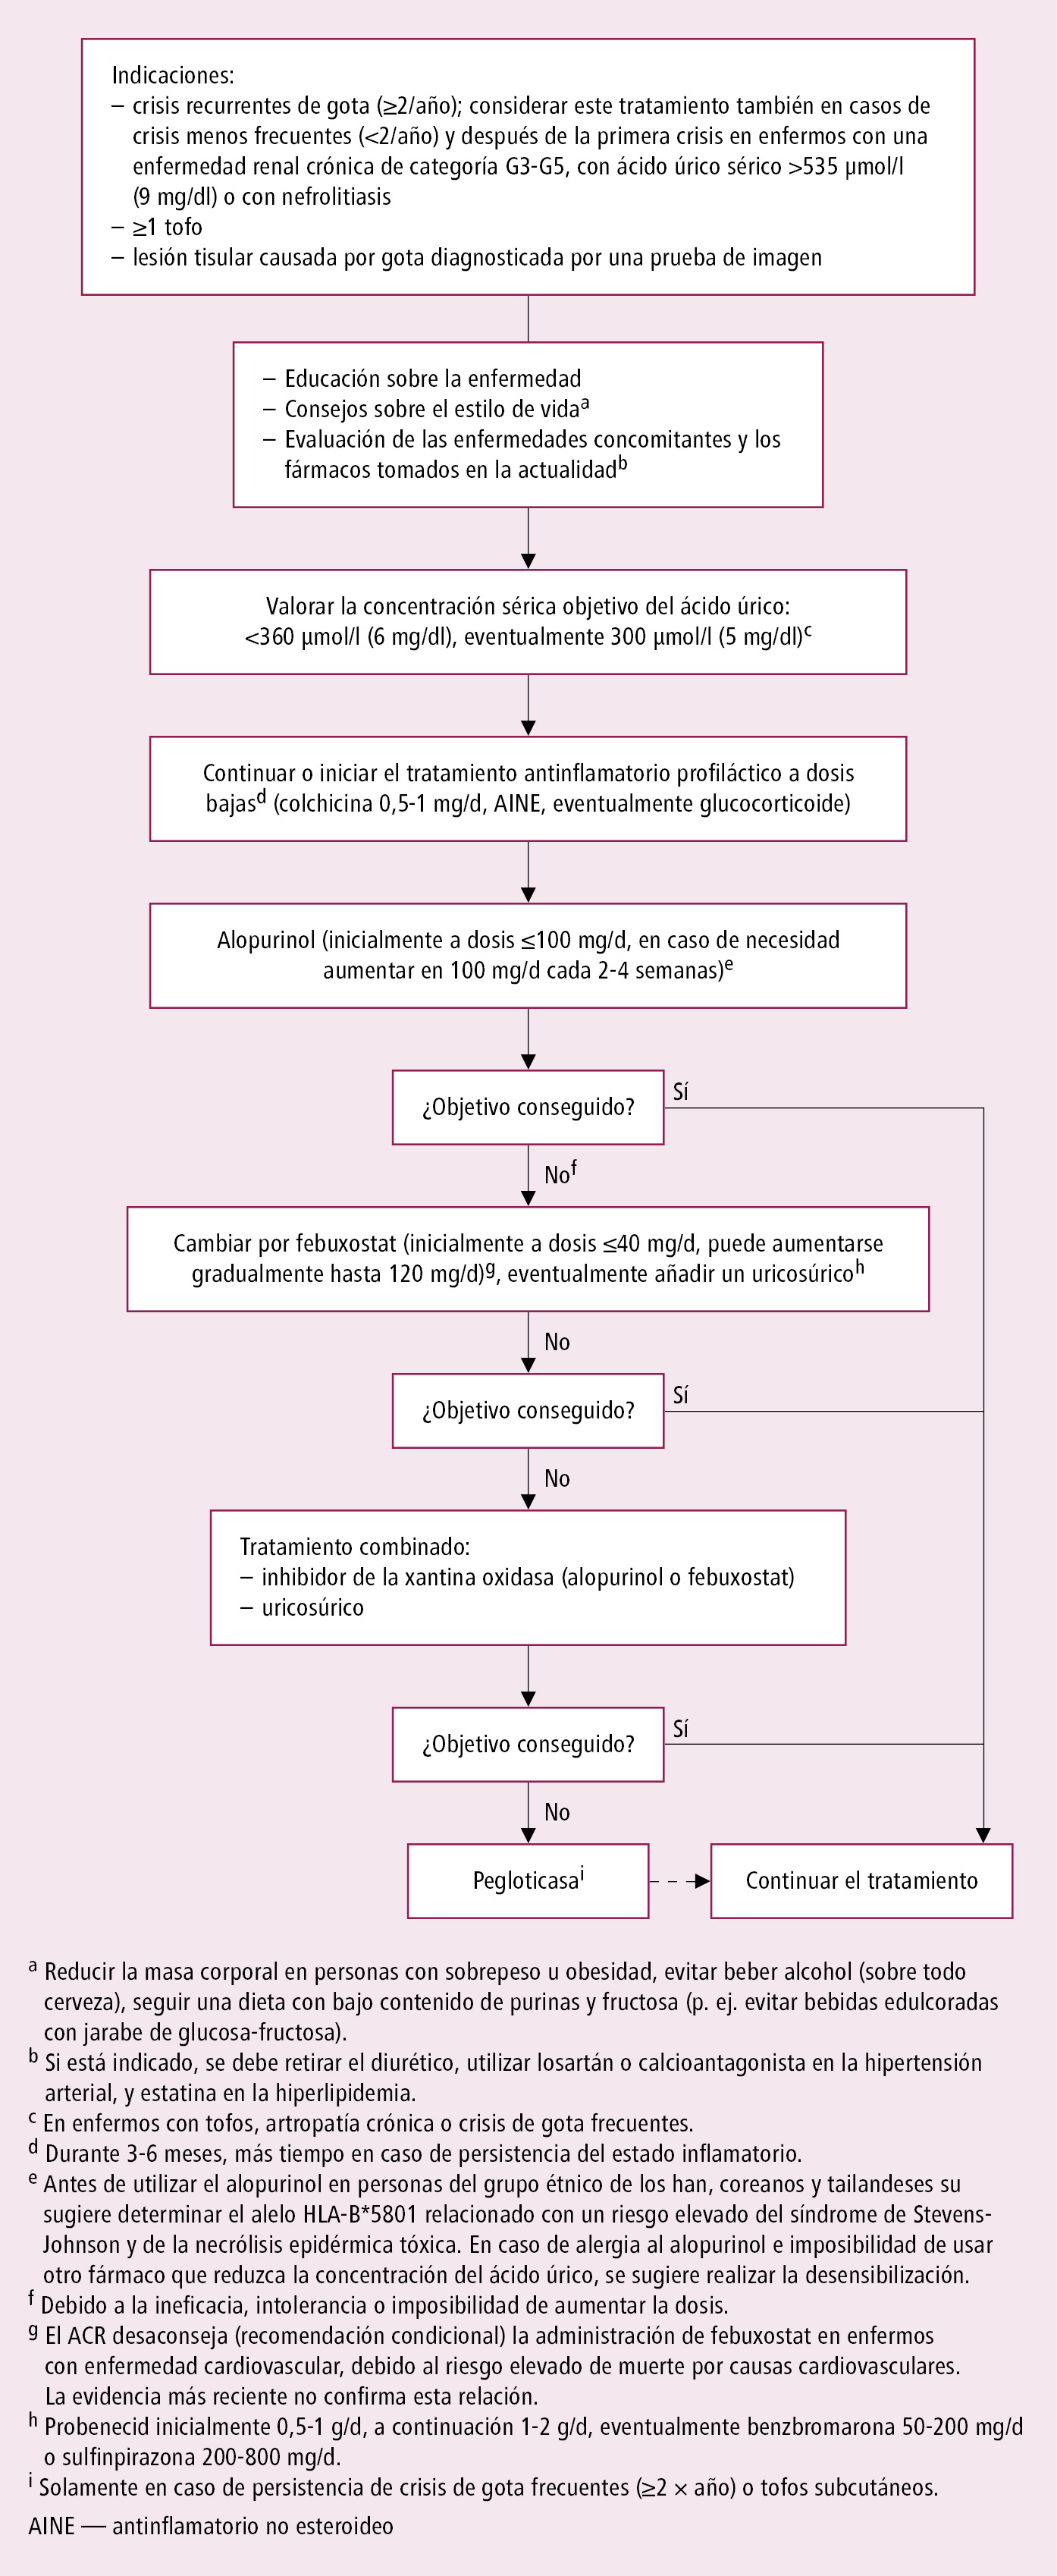    Fig. 17.14-2.  Tratamiento que reduce la concentración de ácido úrico según las guías de la EULAR 2016 y ARC (2020), modificado 